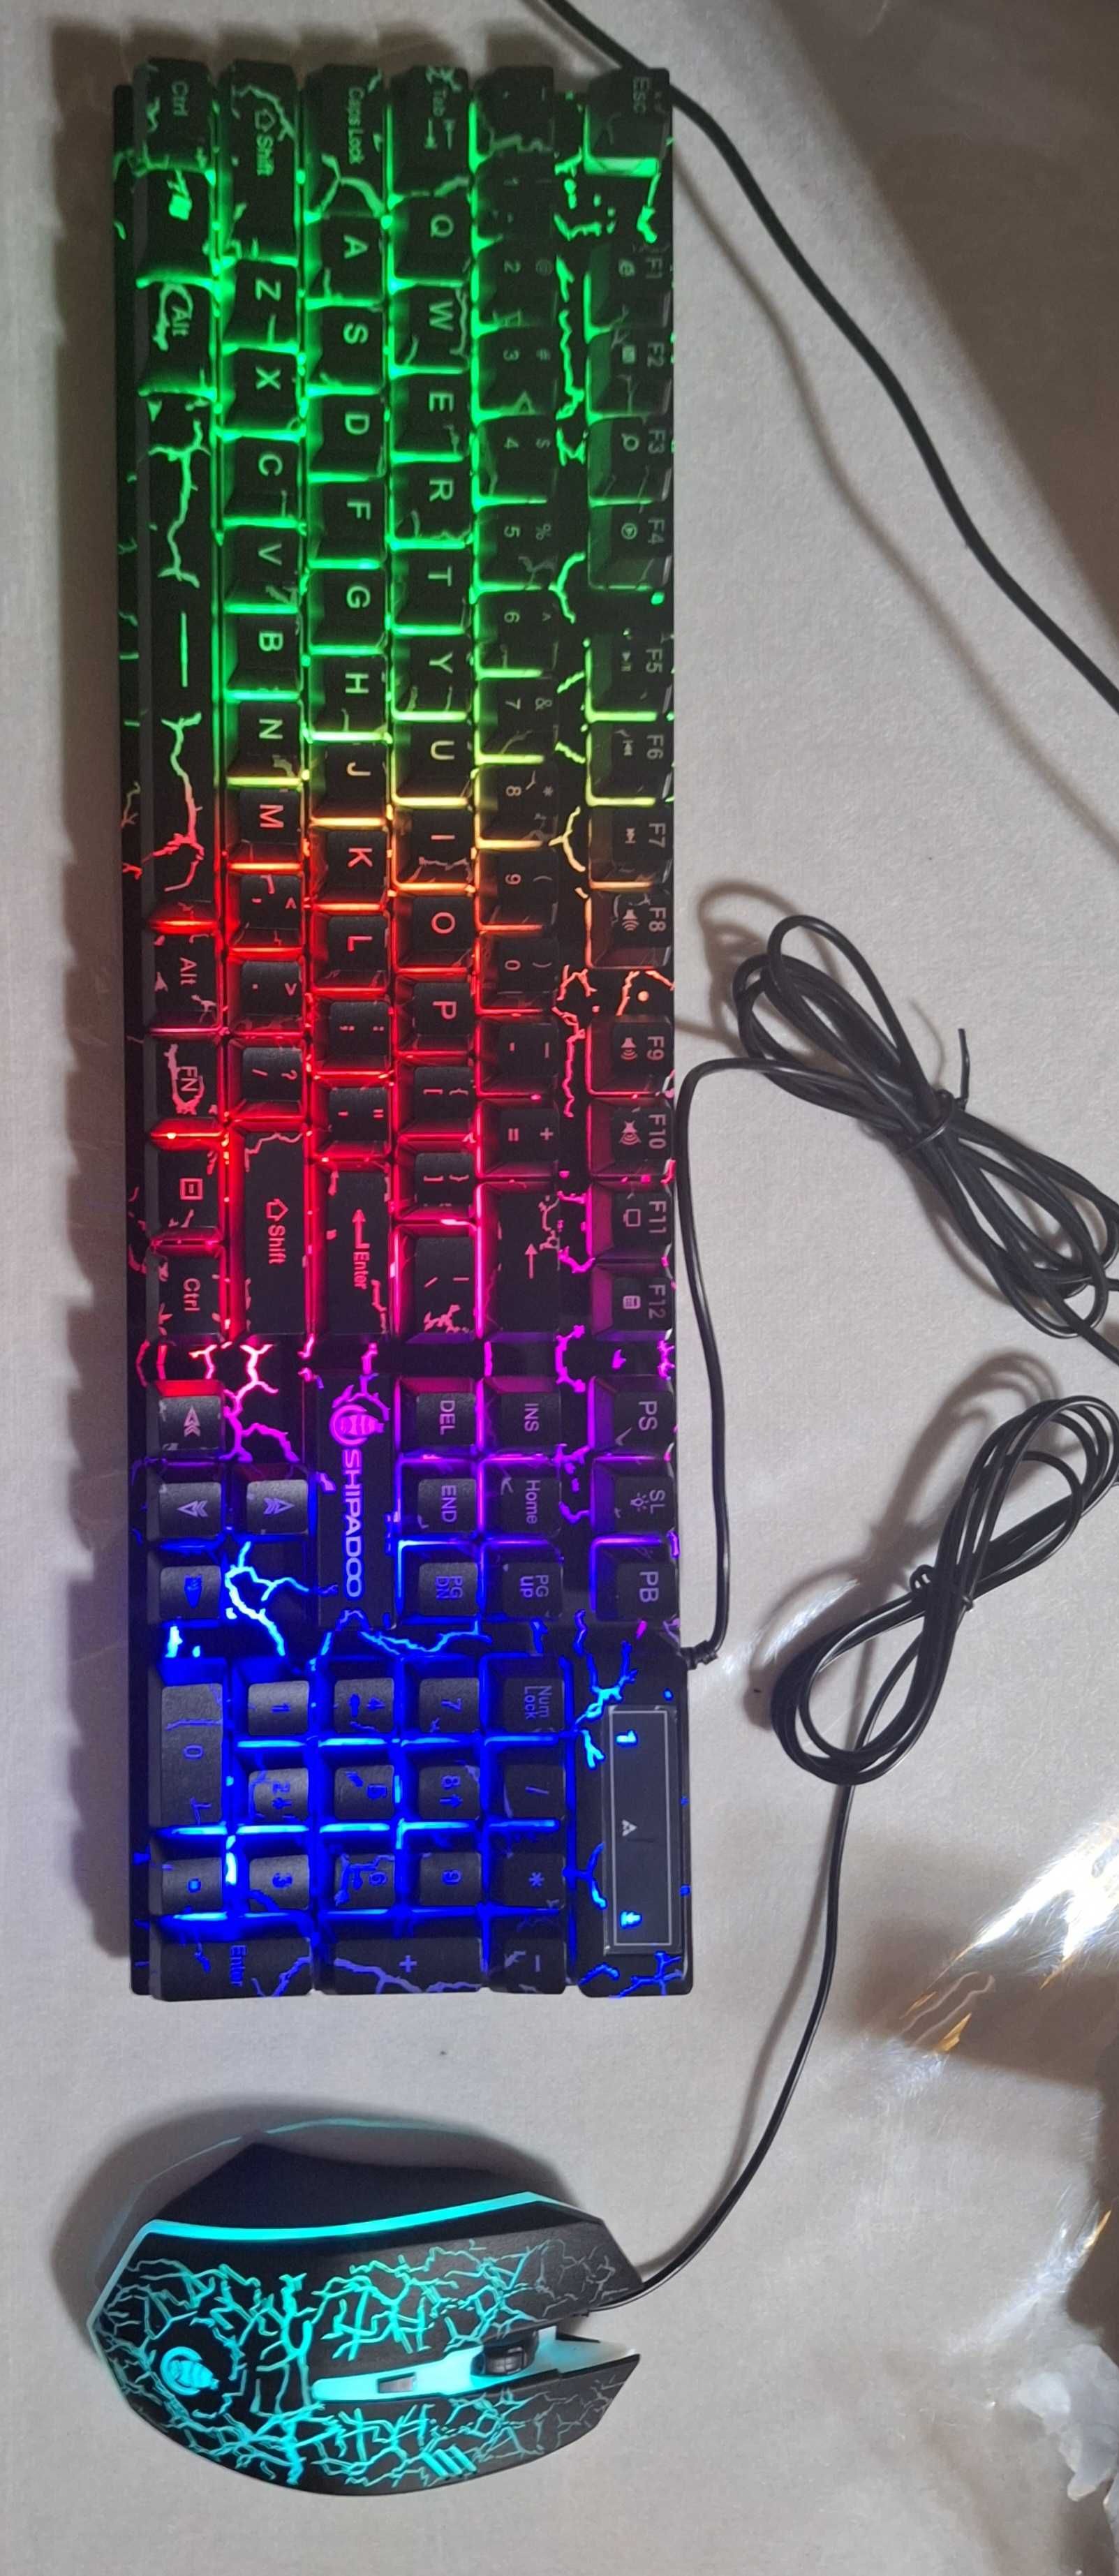 Новый комплект мышь и клавиатура shipadoo проводная с RGB подсветкой